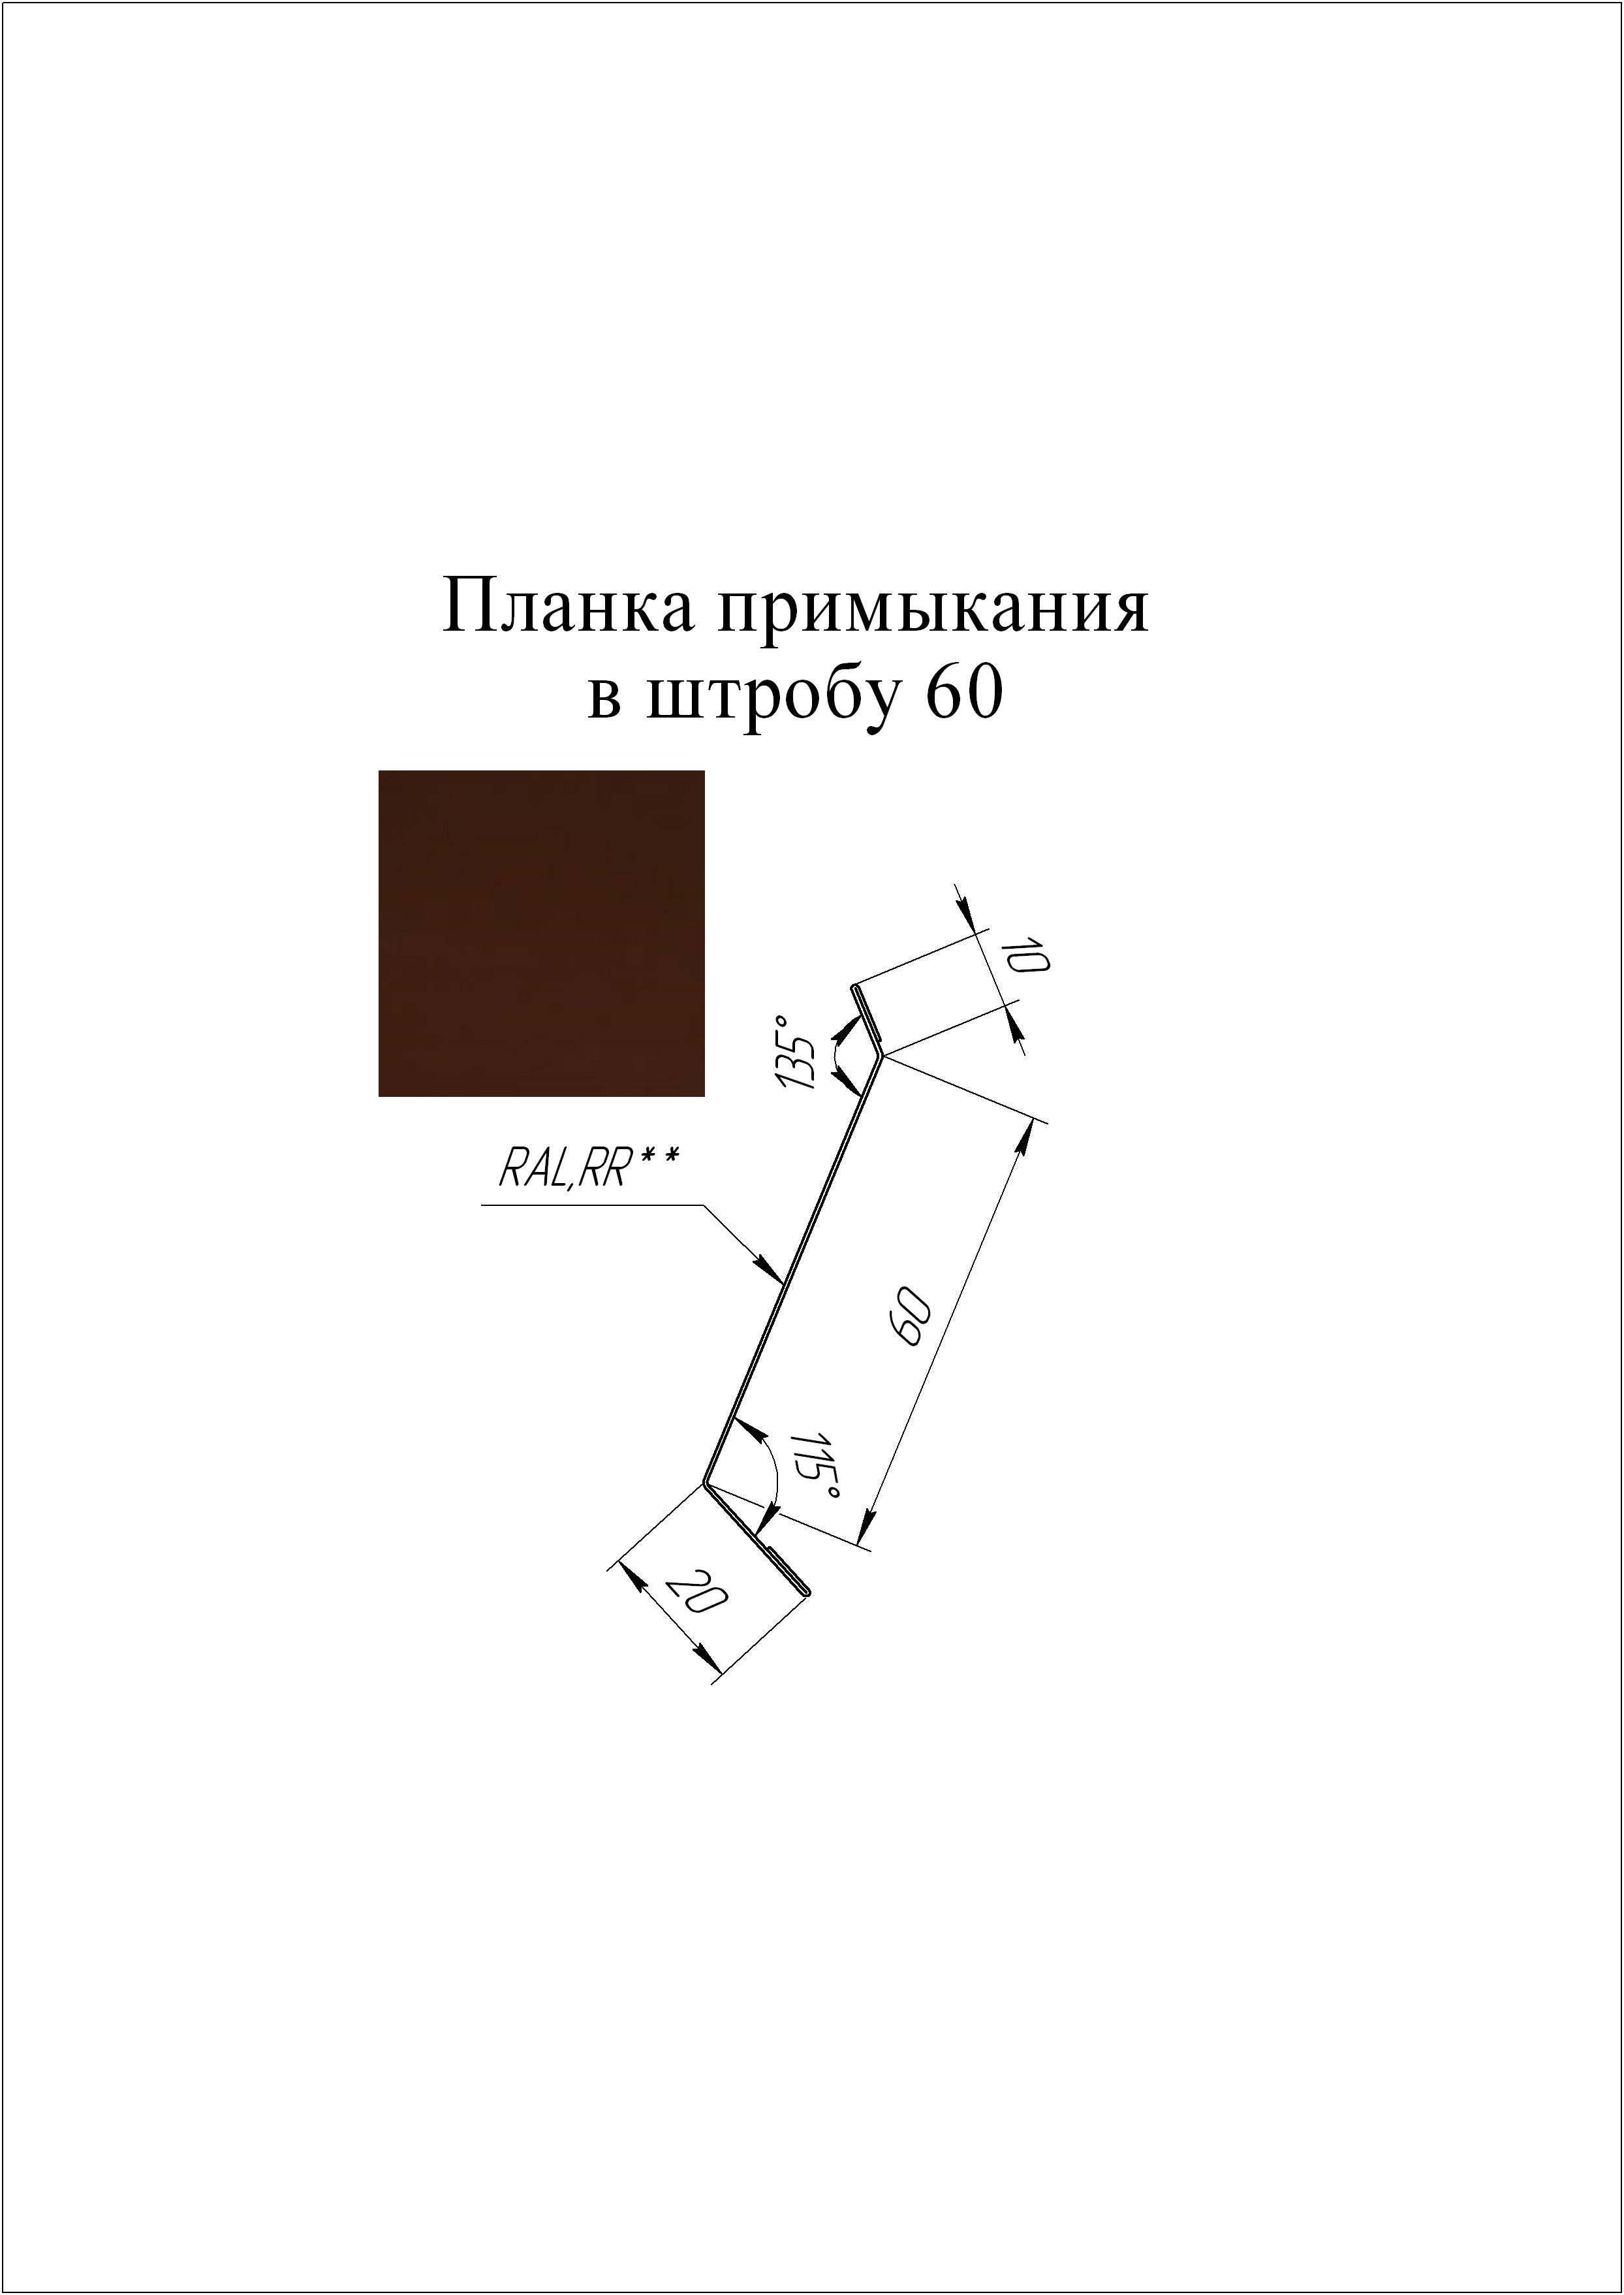 Планка примыкания в штробу 60 мм L=2 м GL GreenCoat Pural BT RR 887 - коричневый шоколад